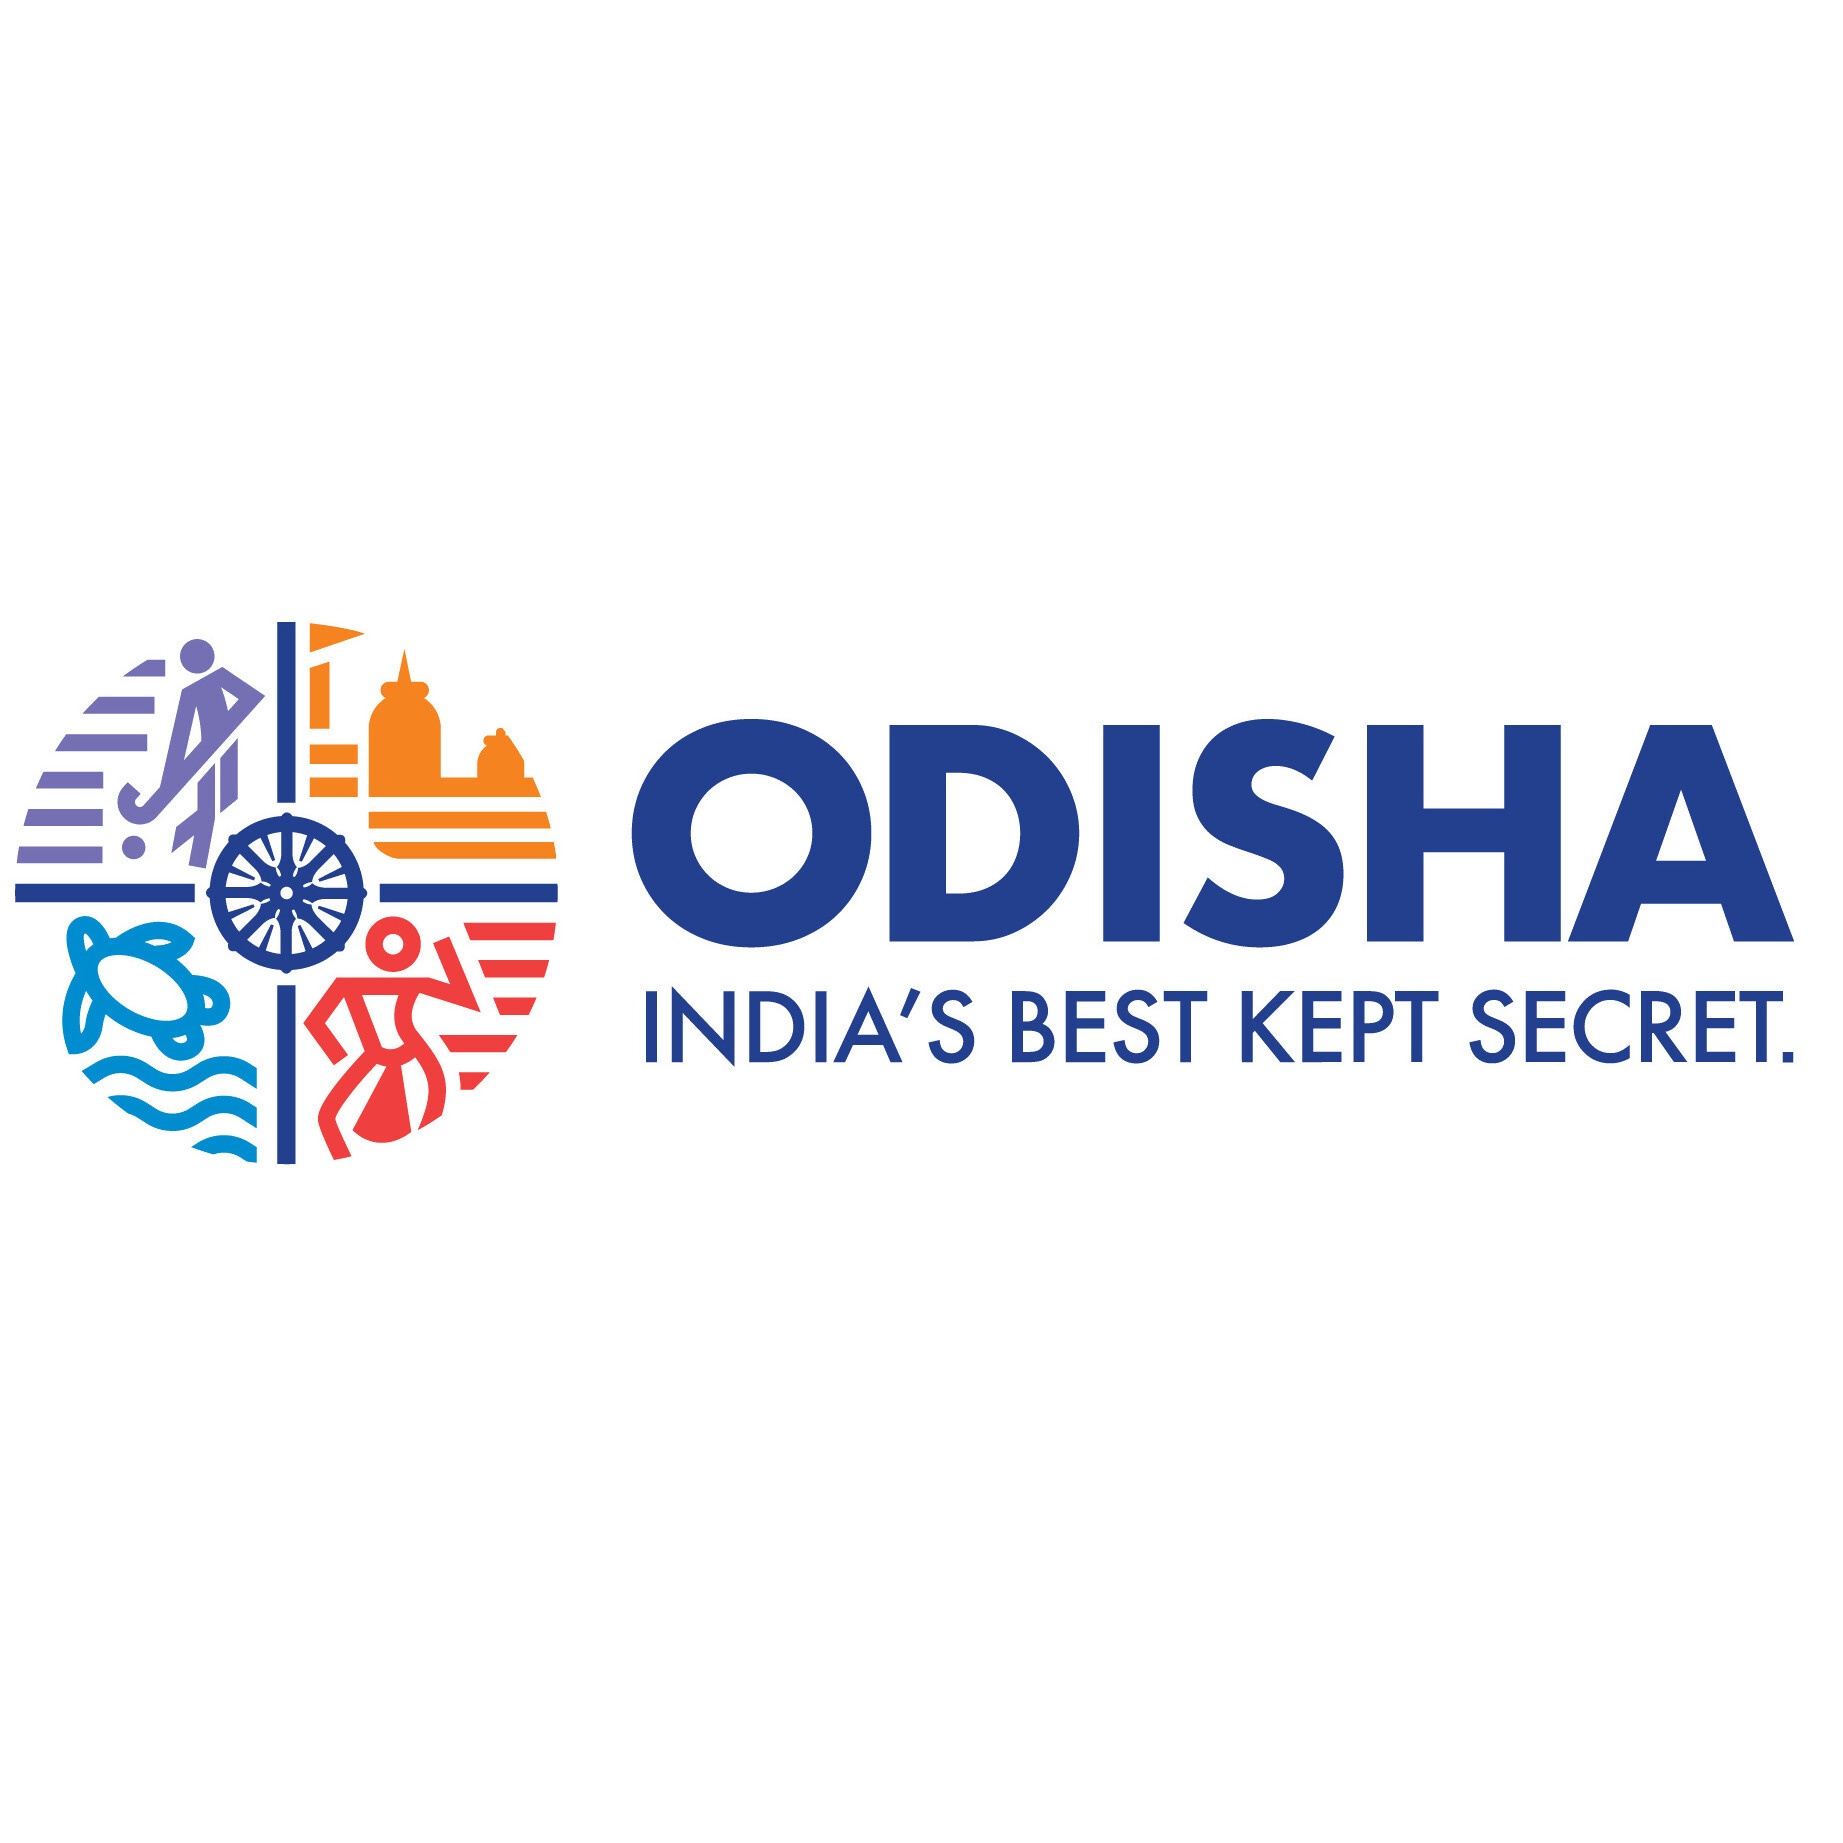 odisha tourism logo meaning